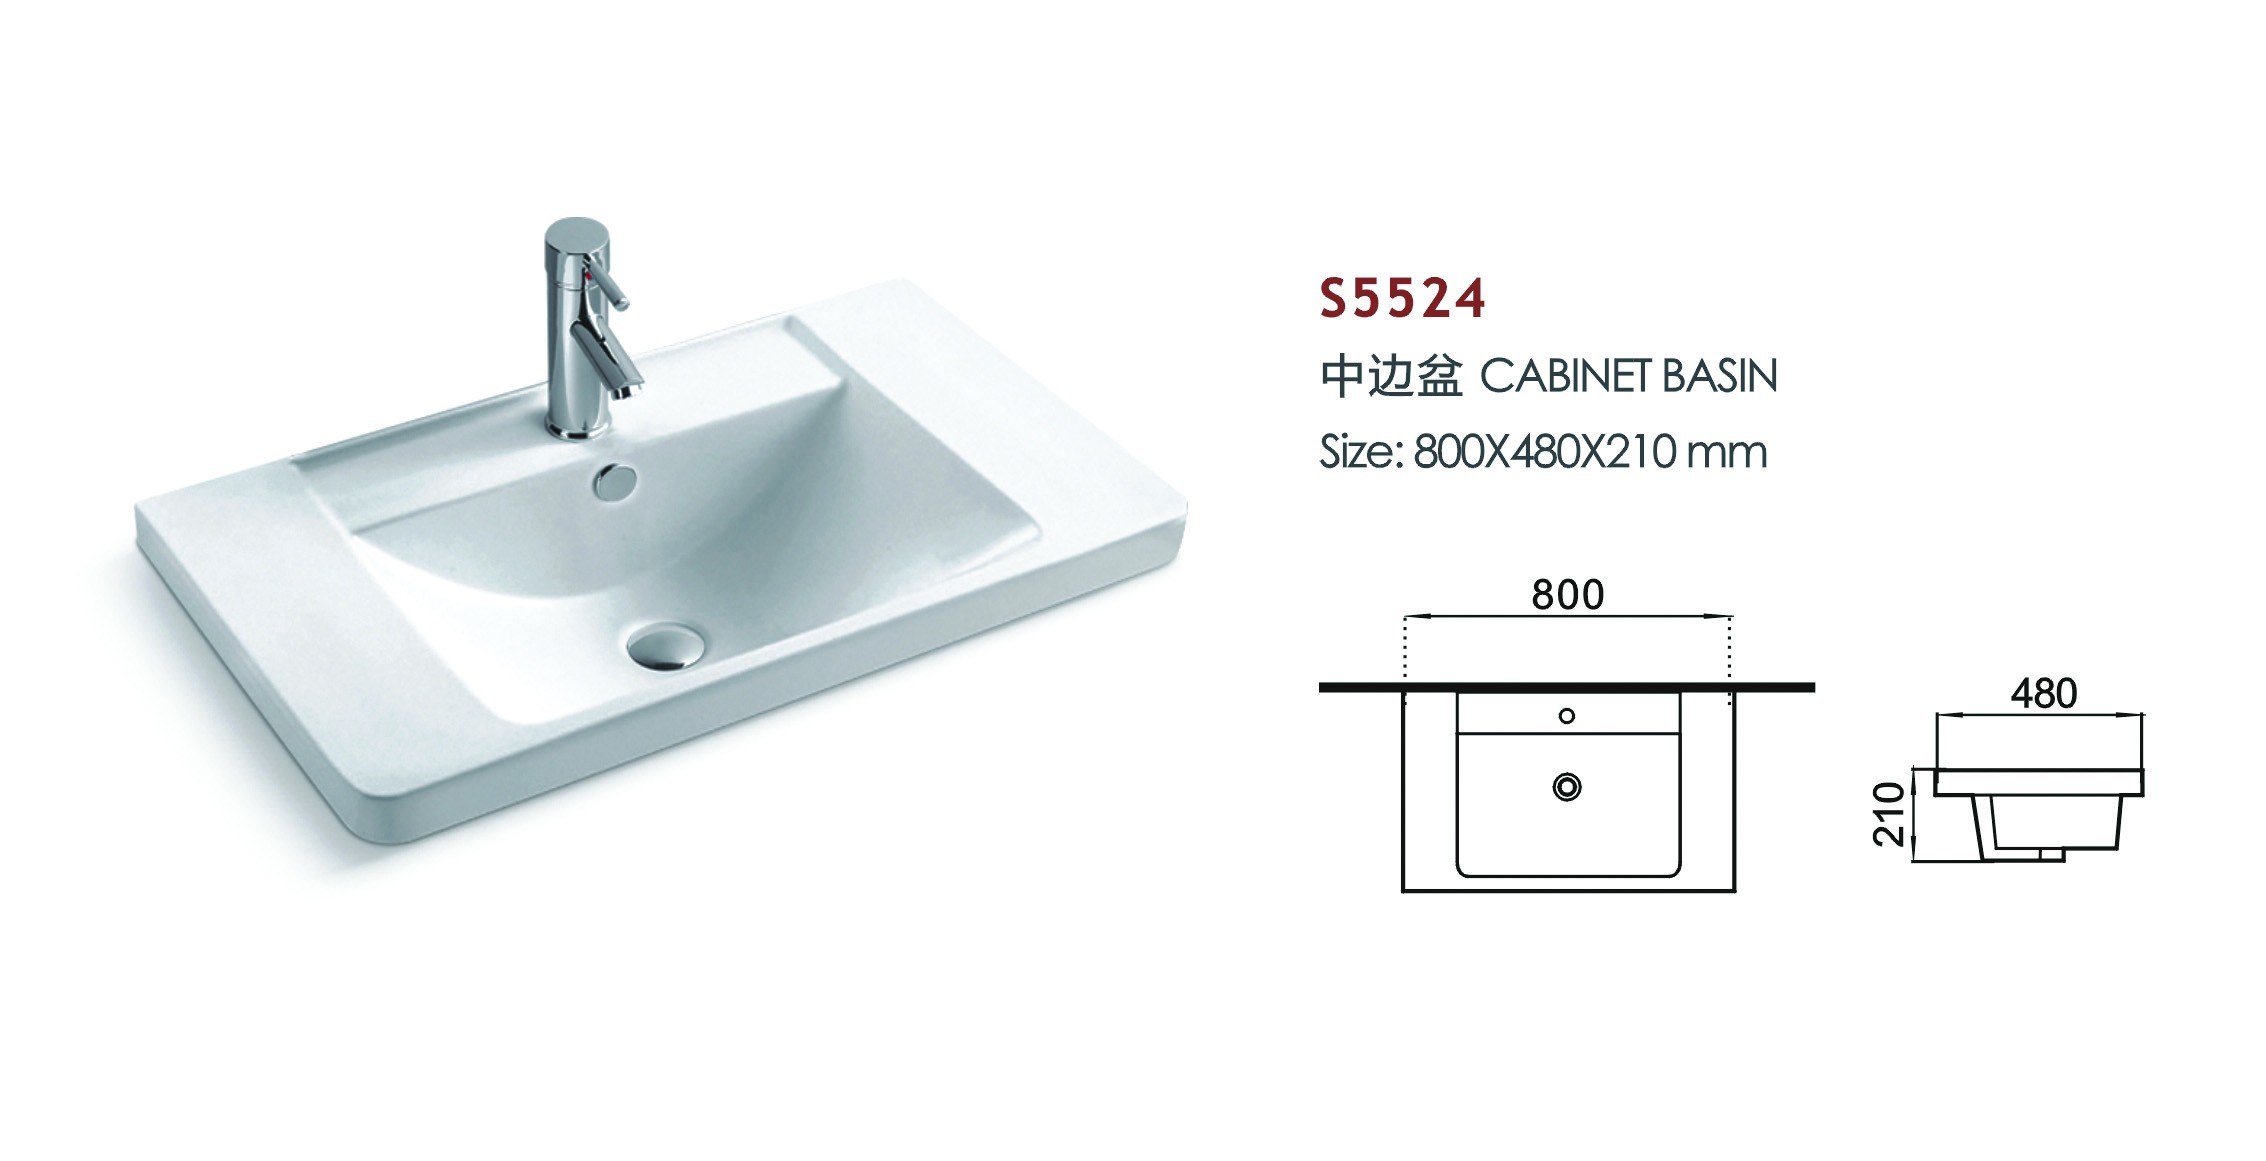 Rectangular Vanity Top Bathroom Sinks for Modern Family (S5524)